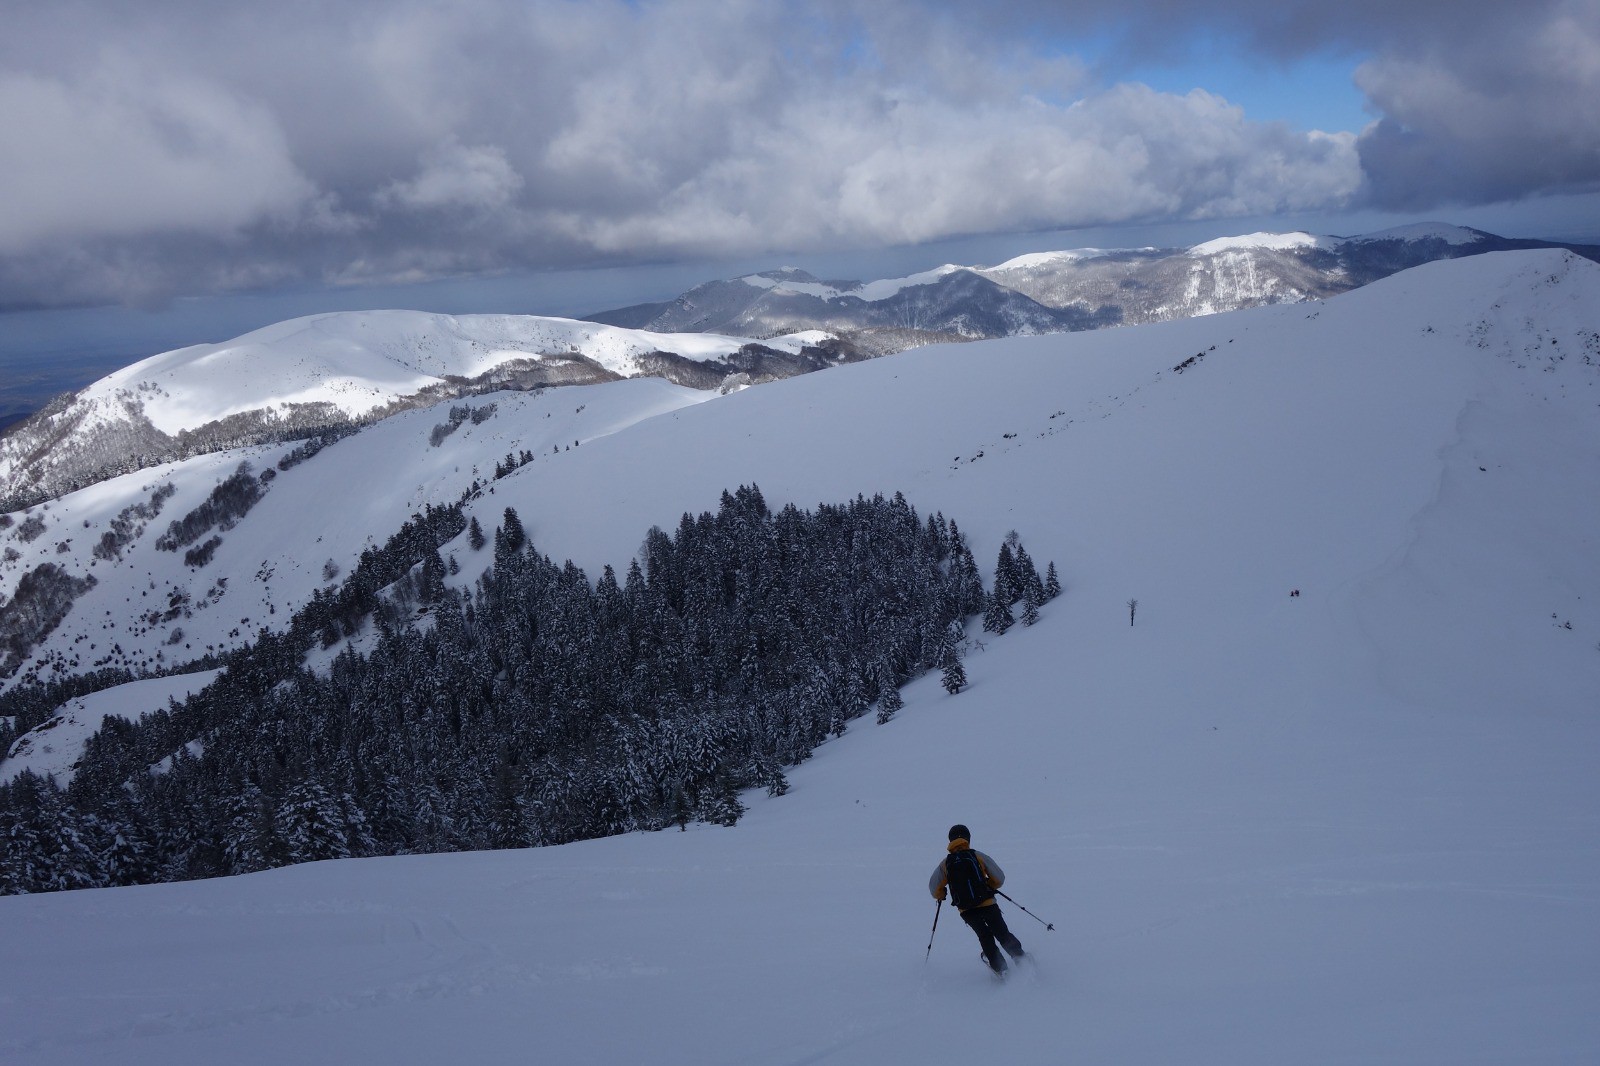 Bon ski de la pale sommitale